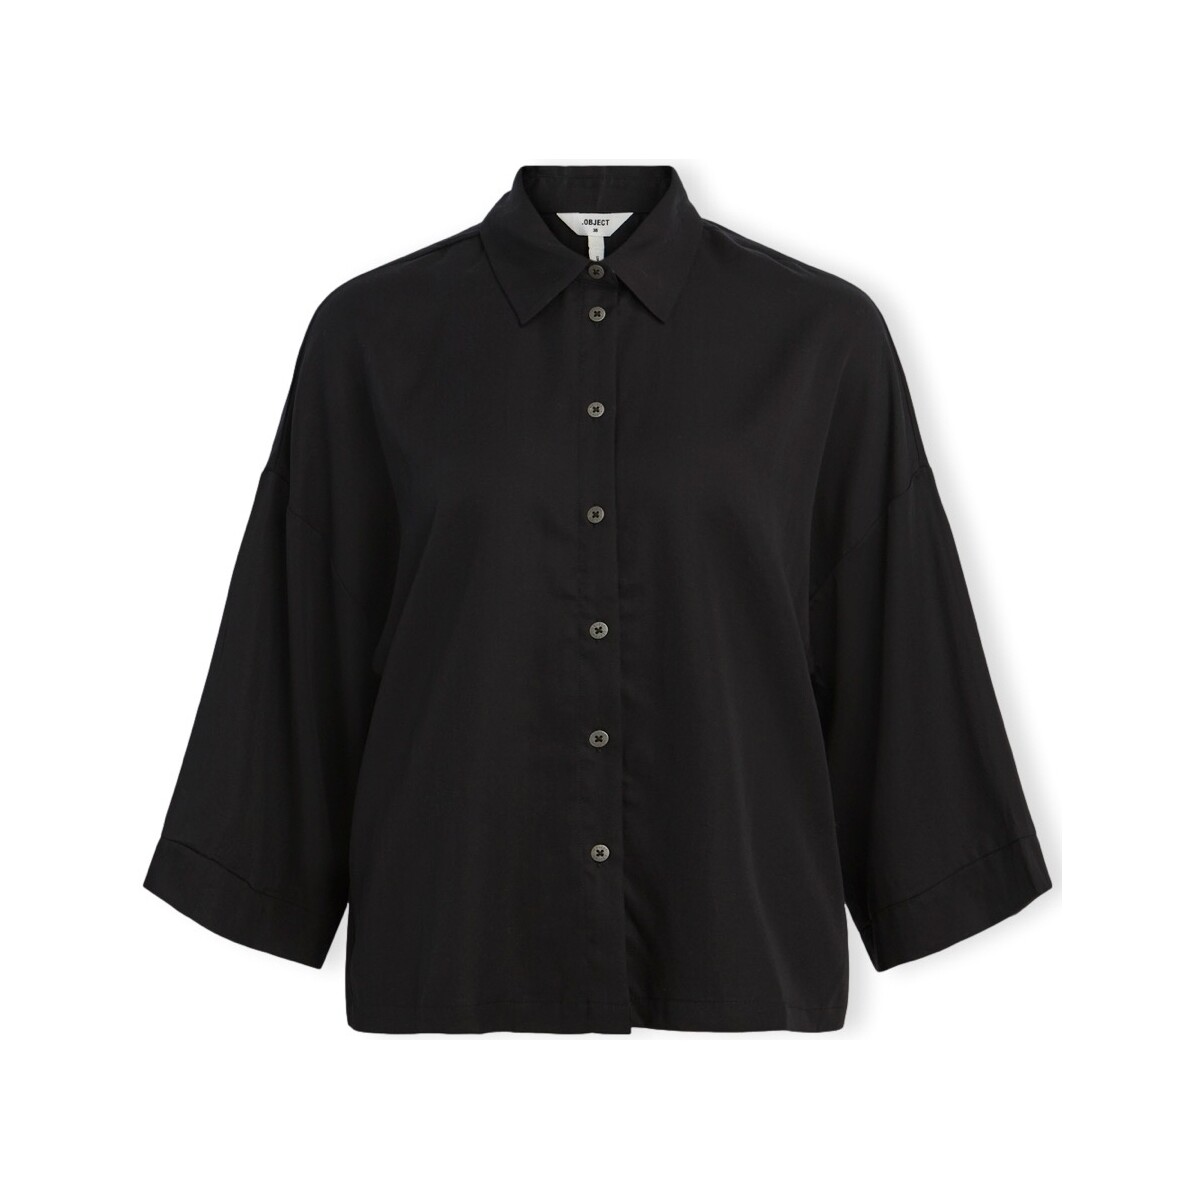 Kleidung Damen Tops / Blusen Object Noos Tilda Boxy Shirt - Black Schwarz